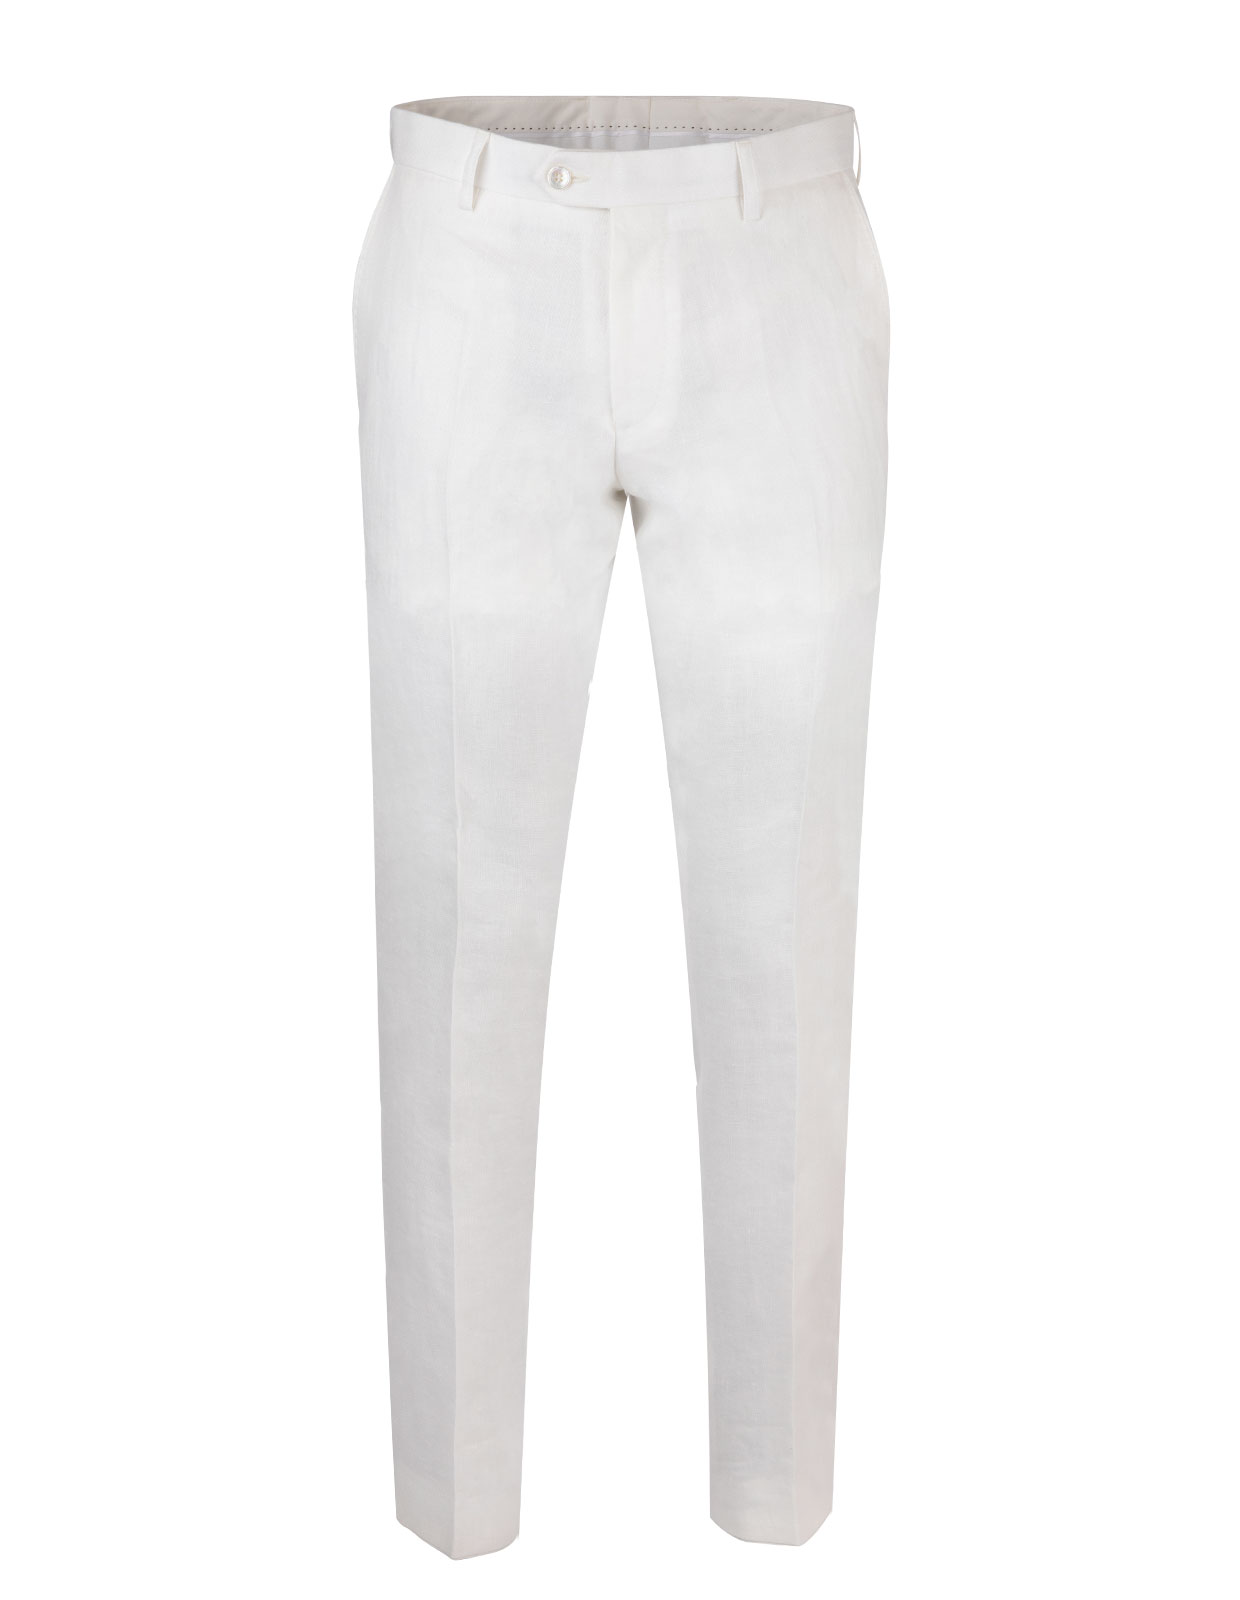 Diego Regular Linen Trouser White Stl 52